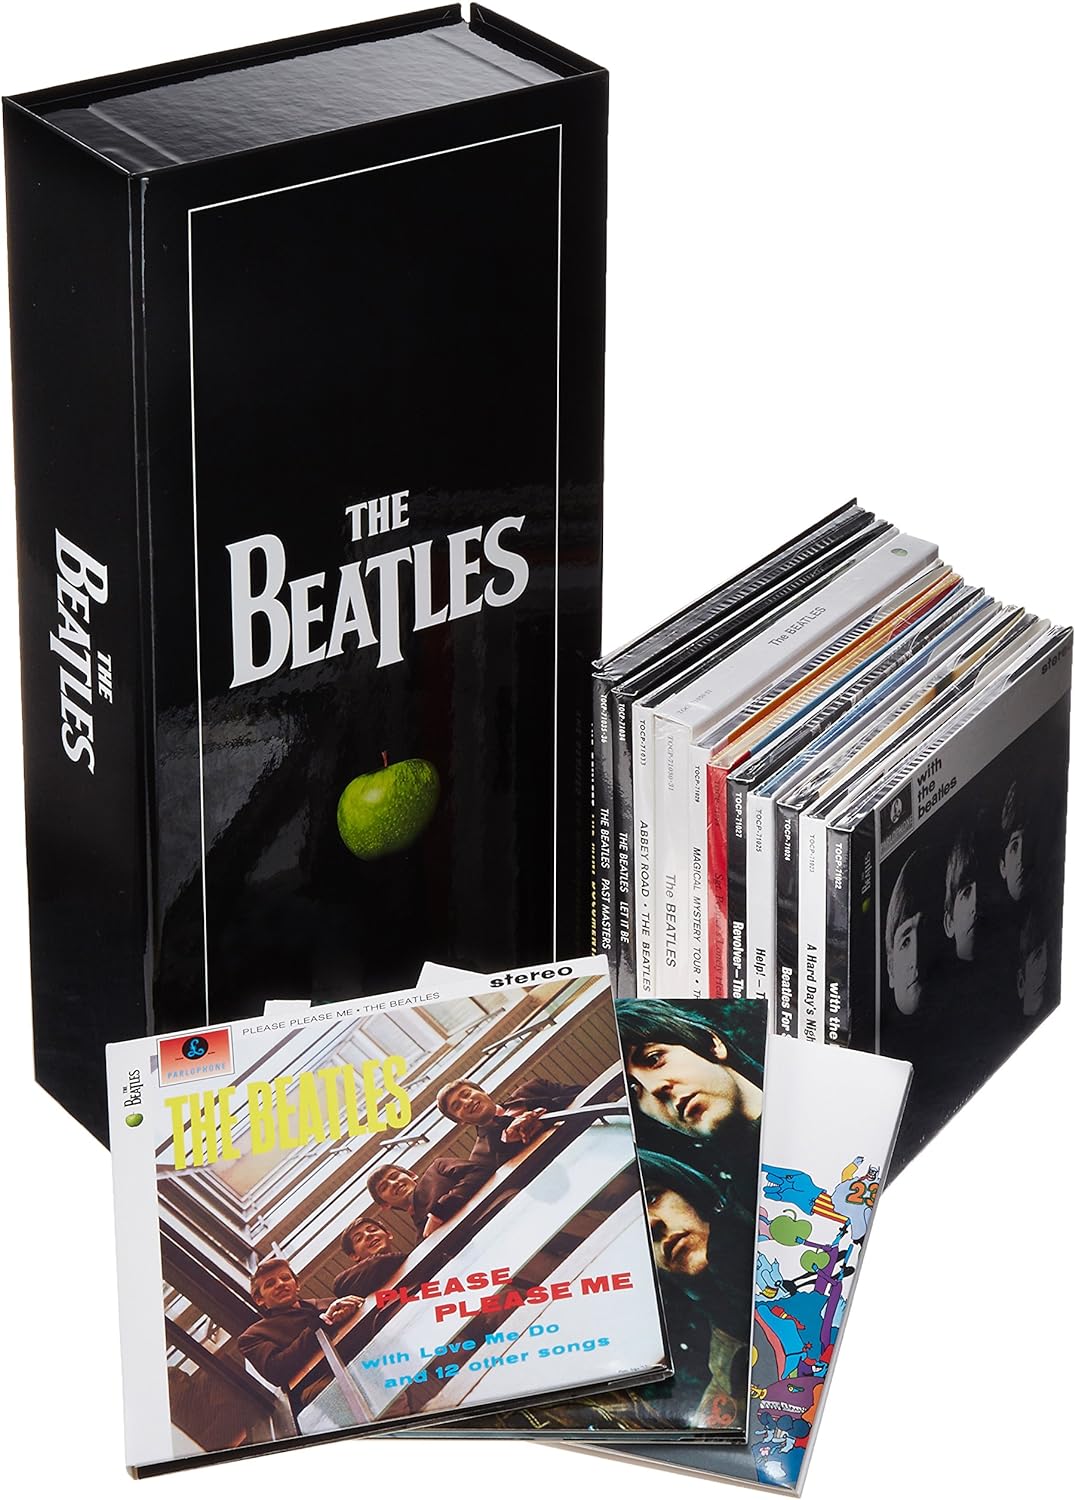 BEATLES ビートルズ / BEATLES (LONG CARD BOX, 16CD + 1DVD) ステレオ・アルバムズ・ボックス